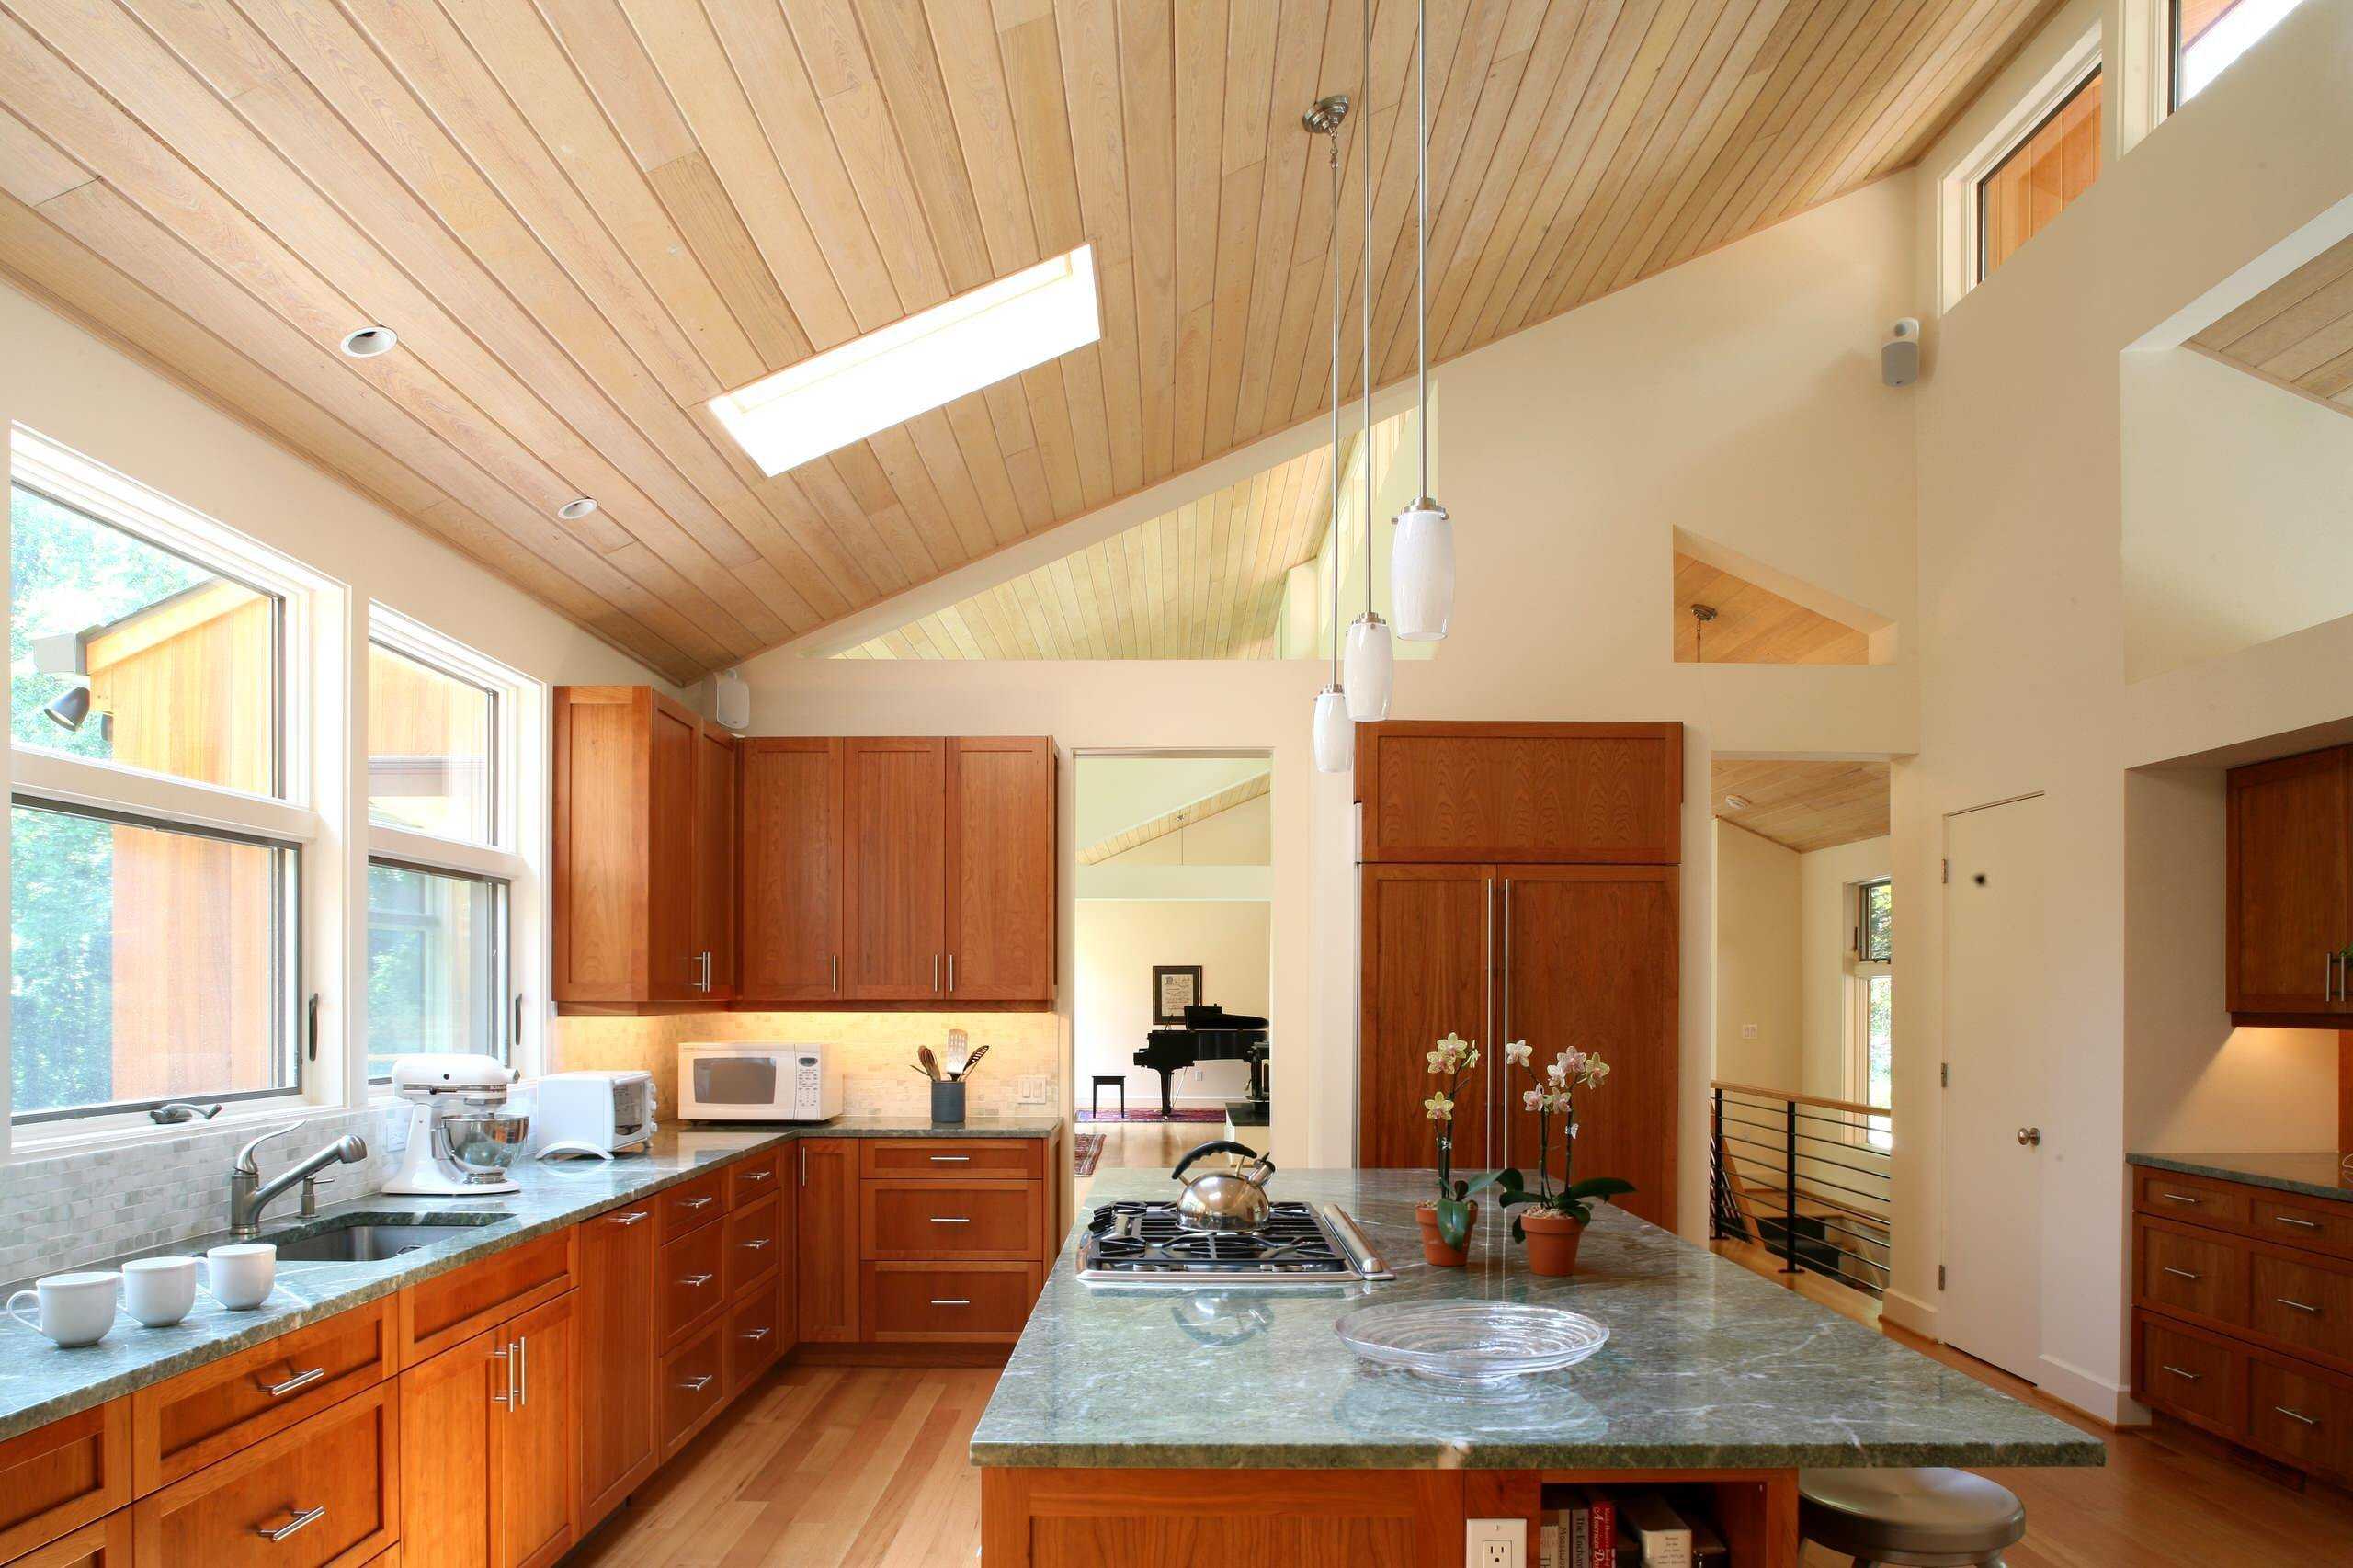 Чем отделать потолок на кухне?